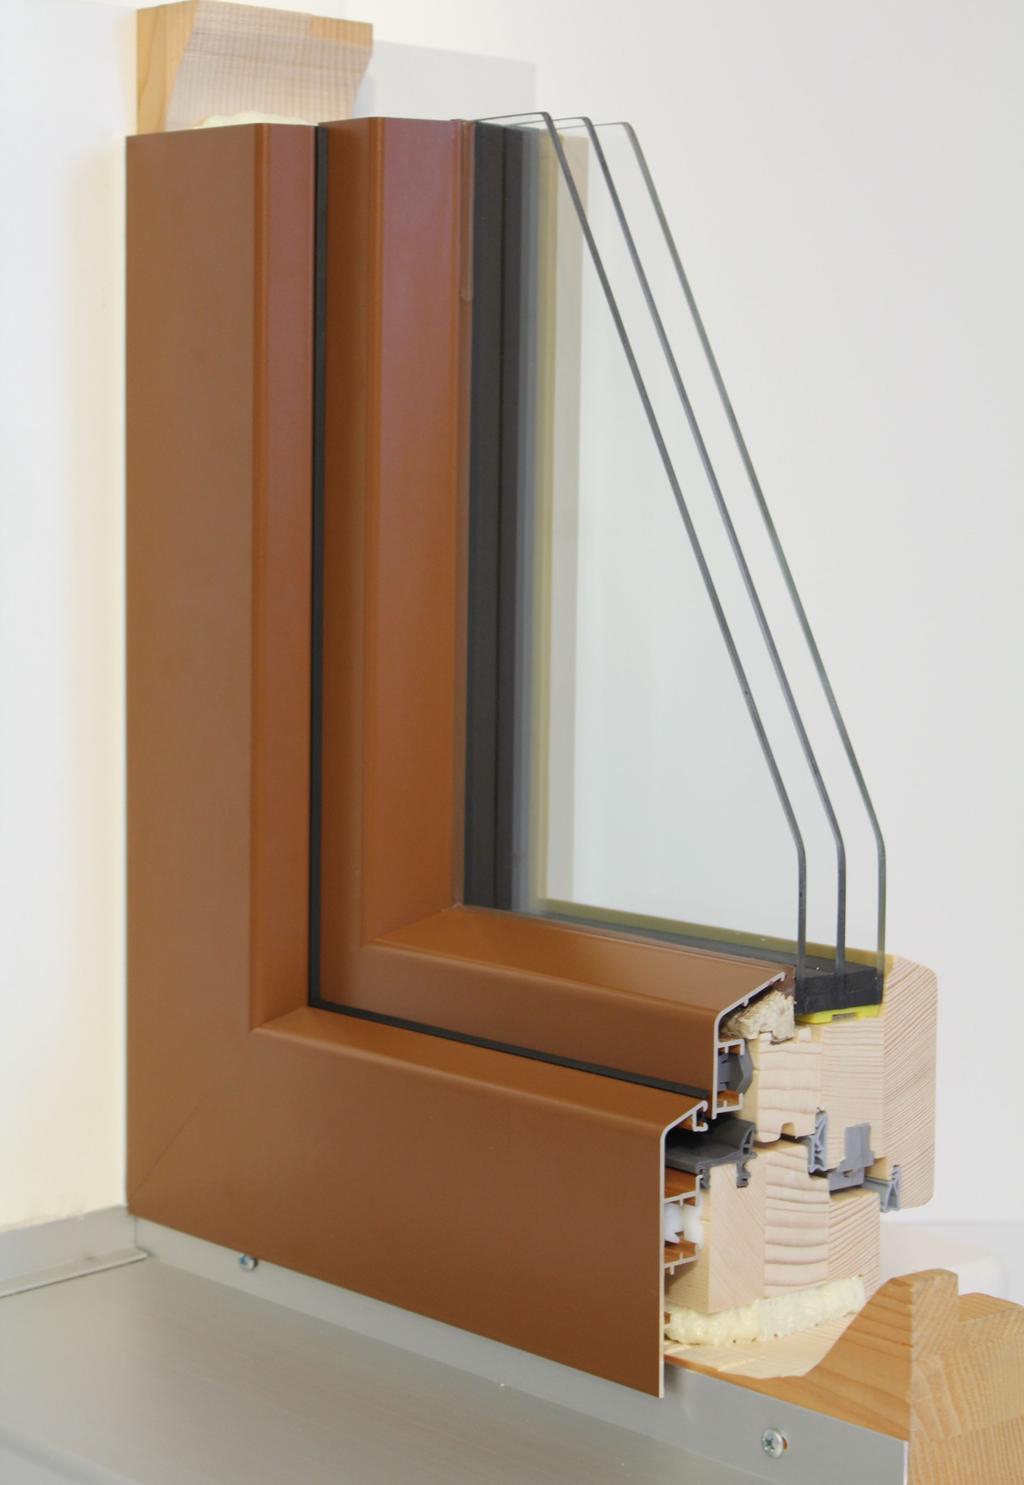 Purenit dämmt den Fensterrahmen zusätzlich 1,08 [w/(m²k)].